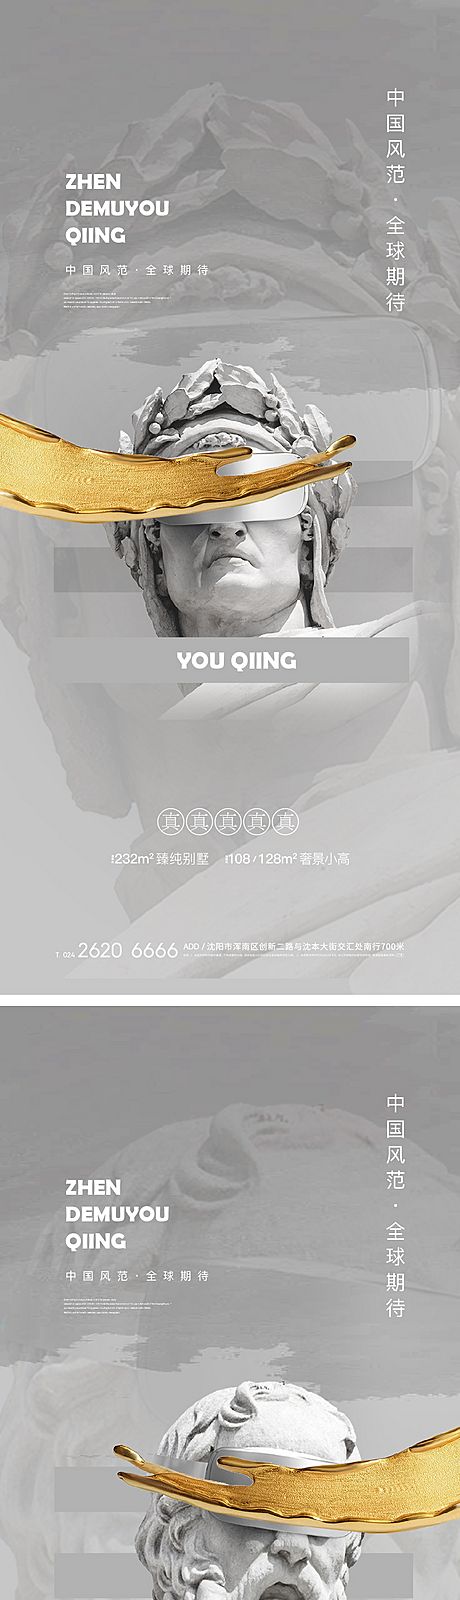 仙图网-地产艺术雕塑活动系列海报